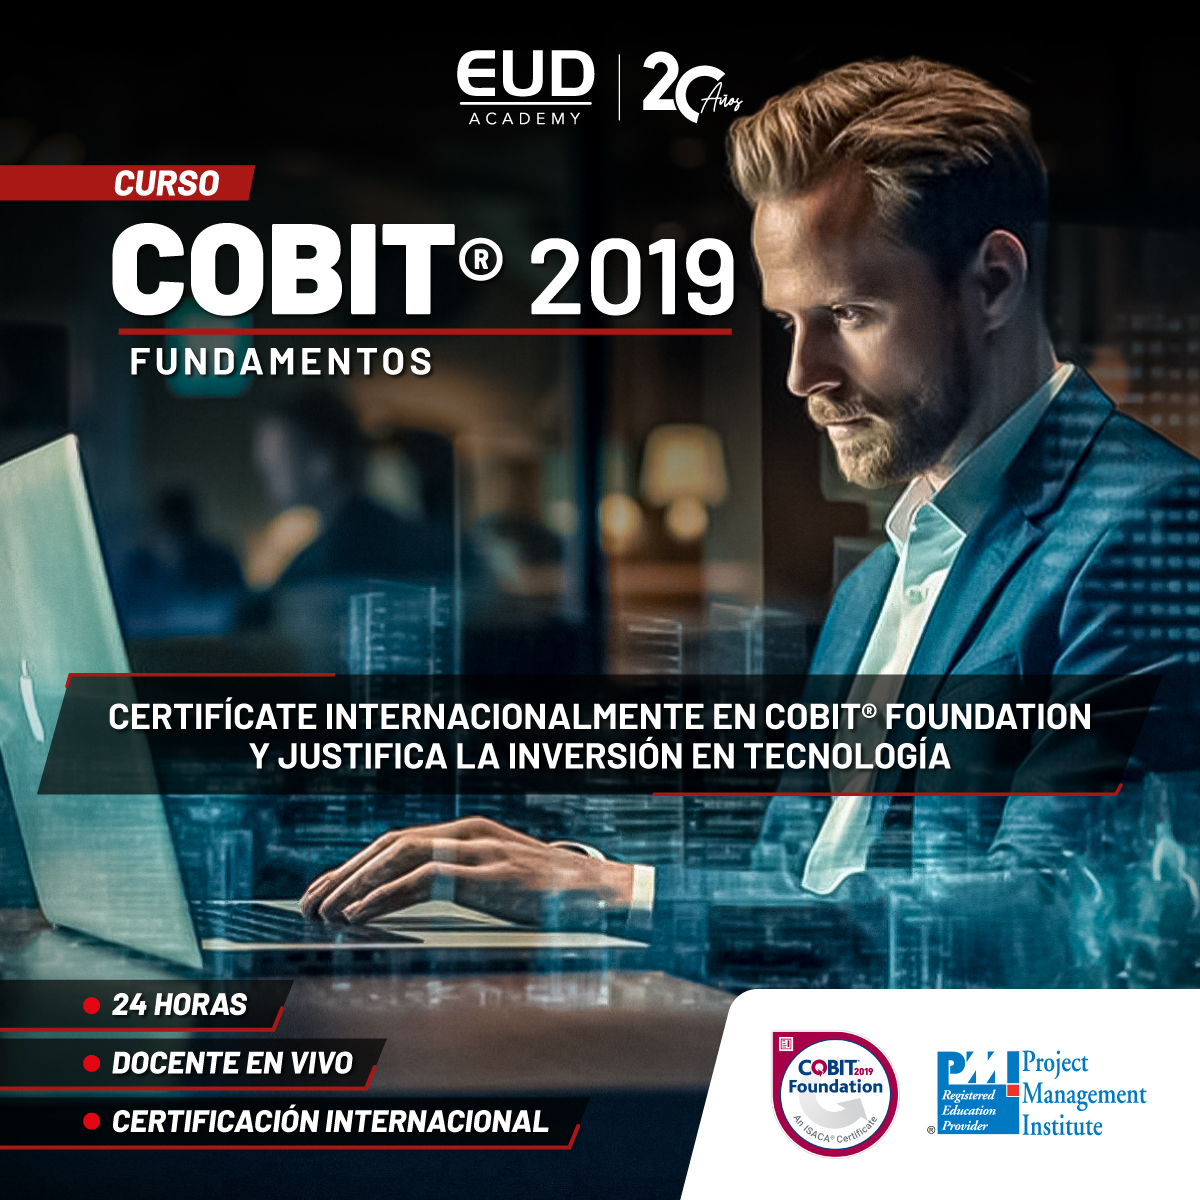 COBIT 2019 en EUD Academy